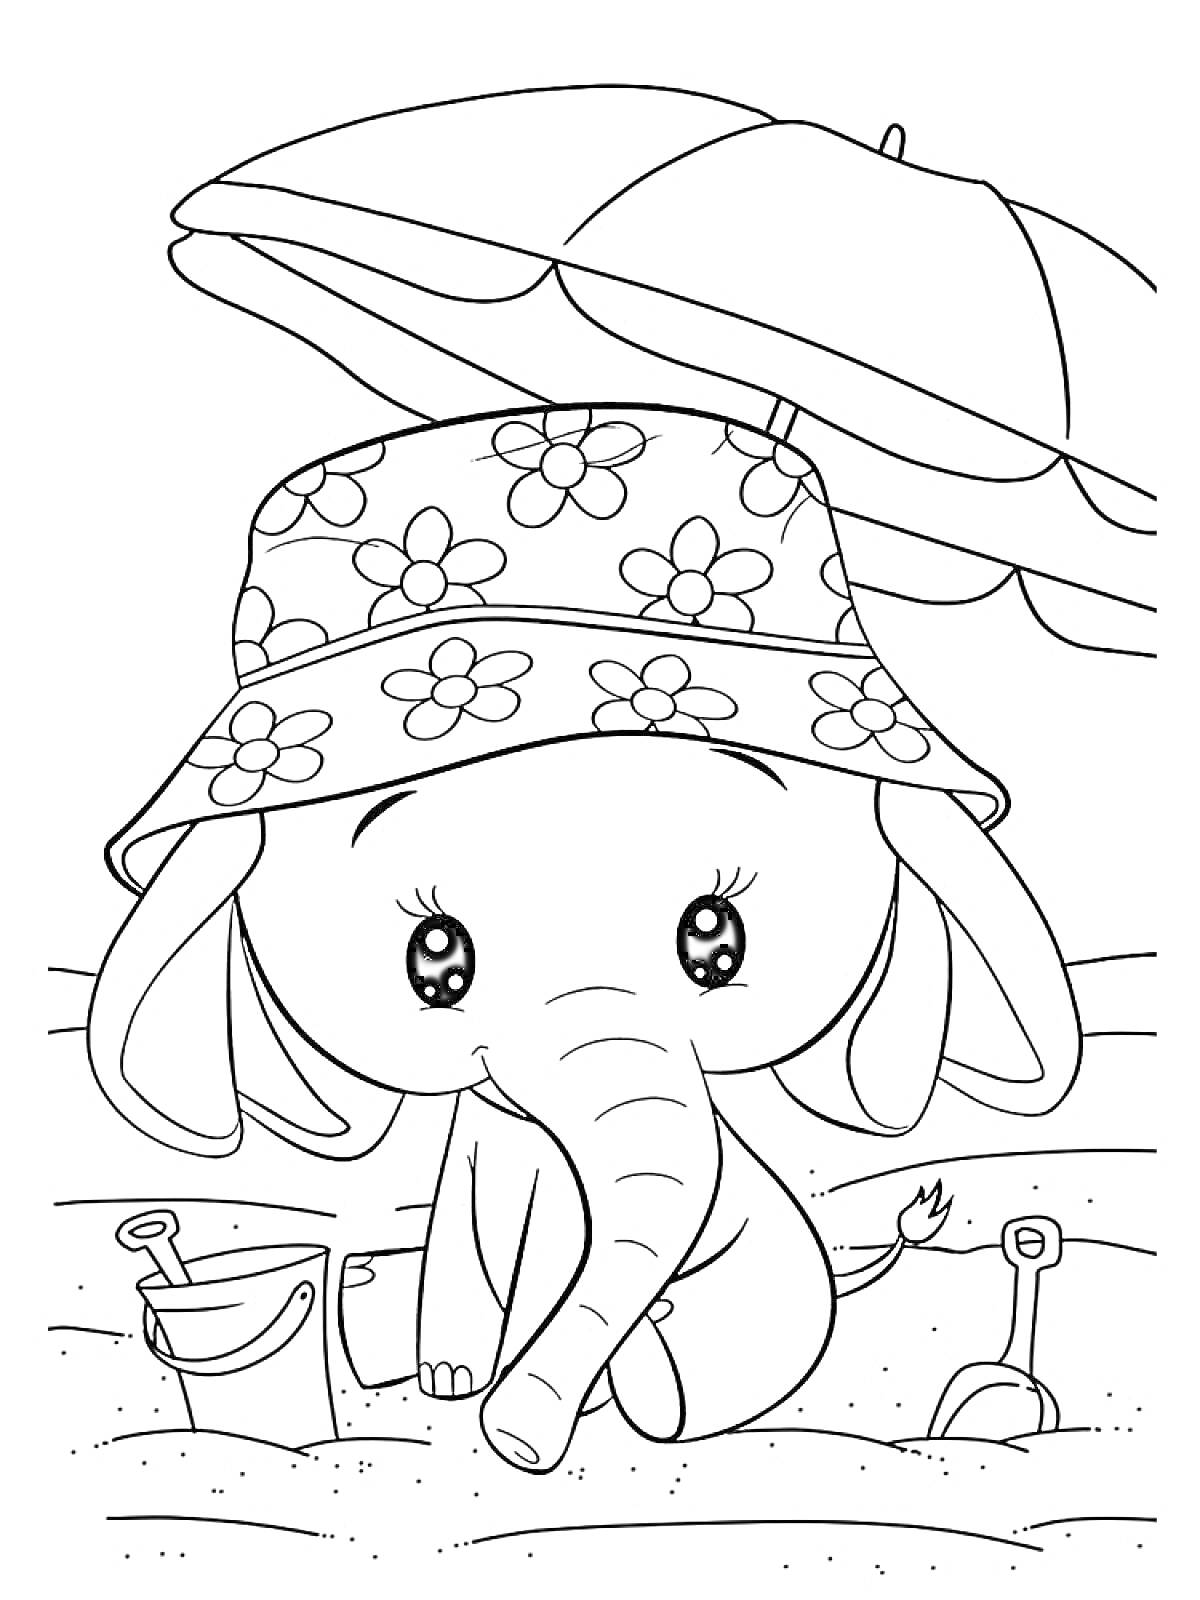 Раскраска Слонёнок в панамке на пляже с зонтиком, ведёрком и лопатками